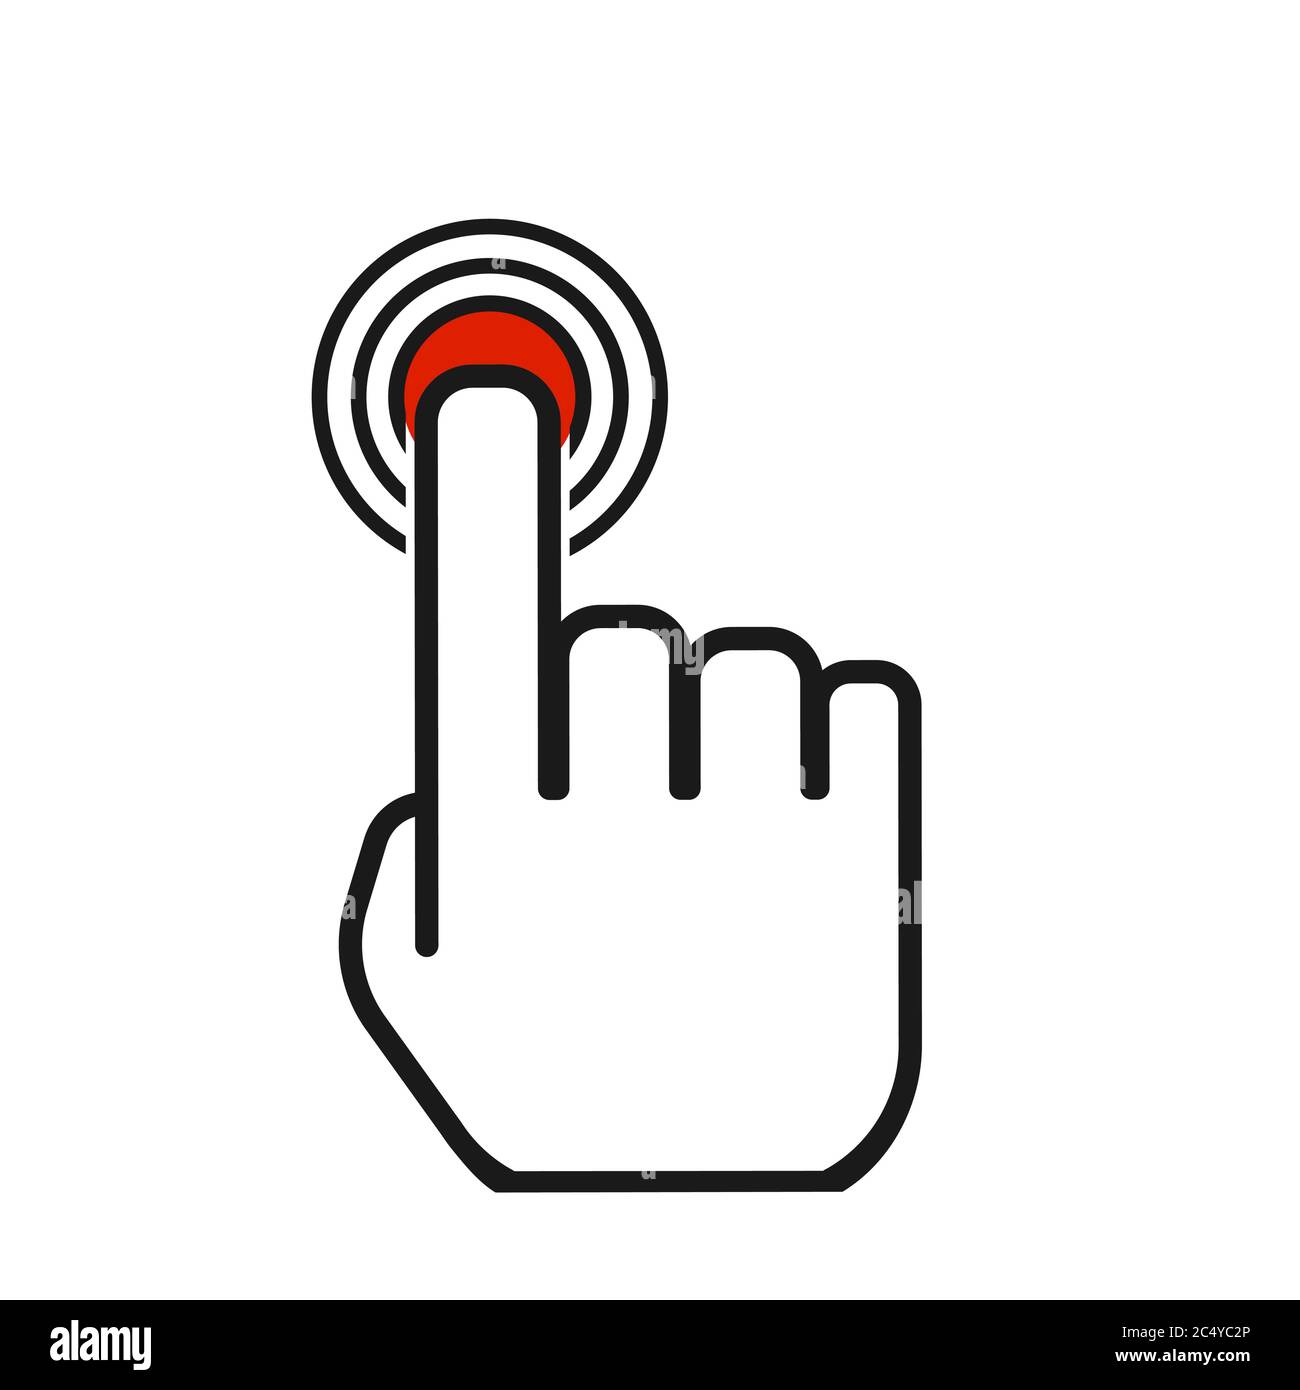 finger click icon